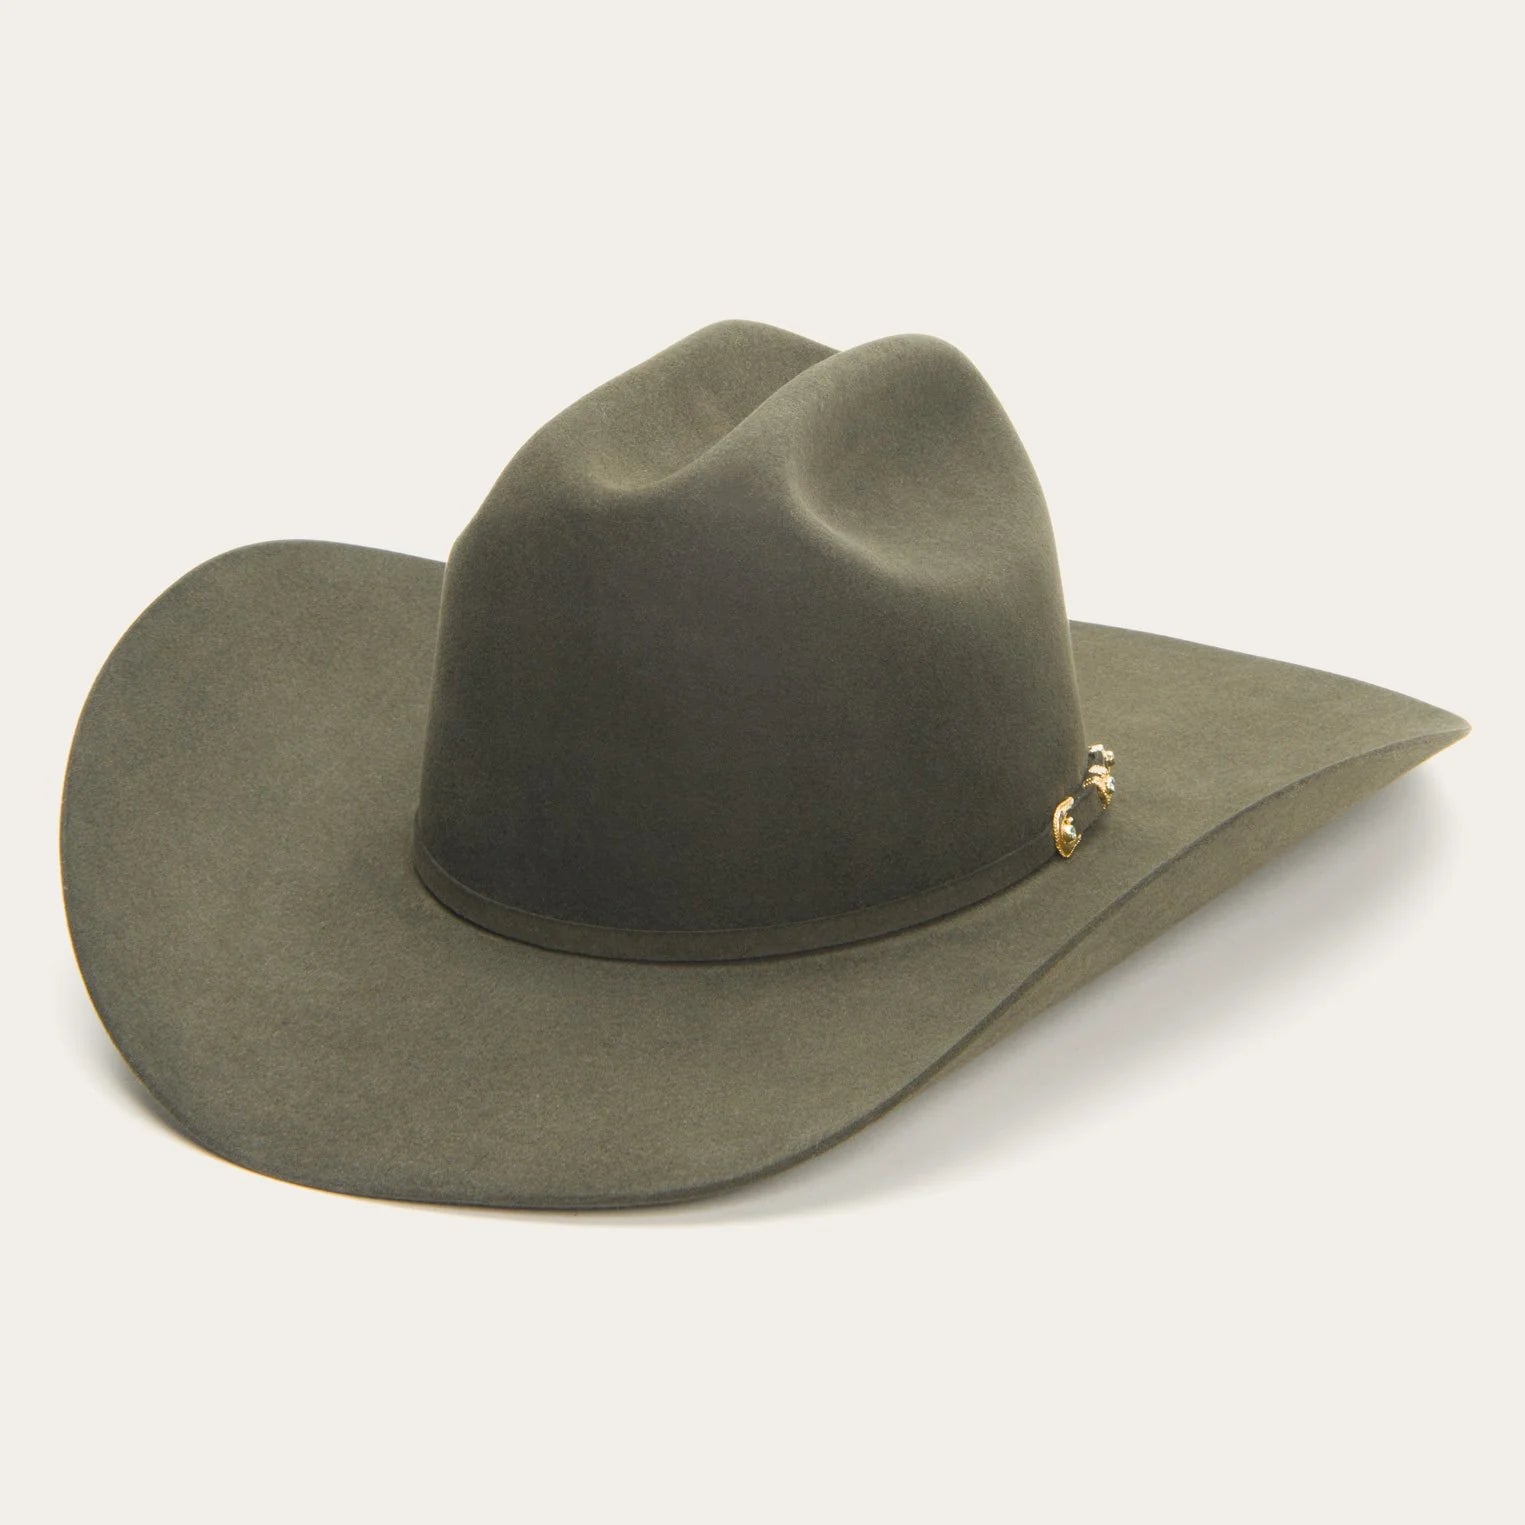 Munford 6X Sage Cowboy Felt Hat